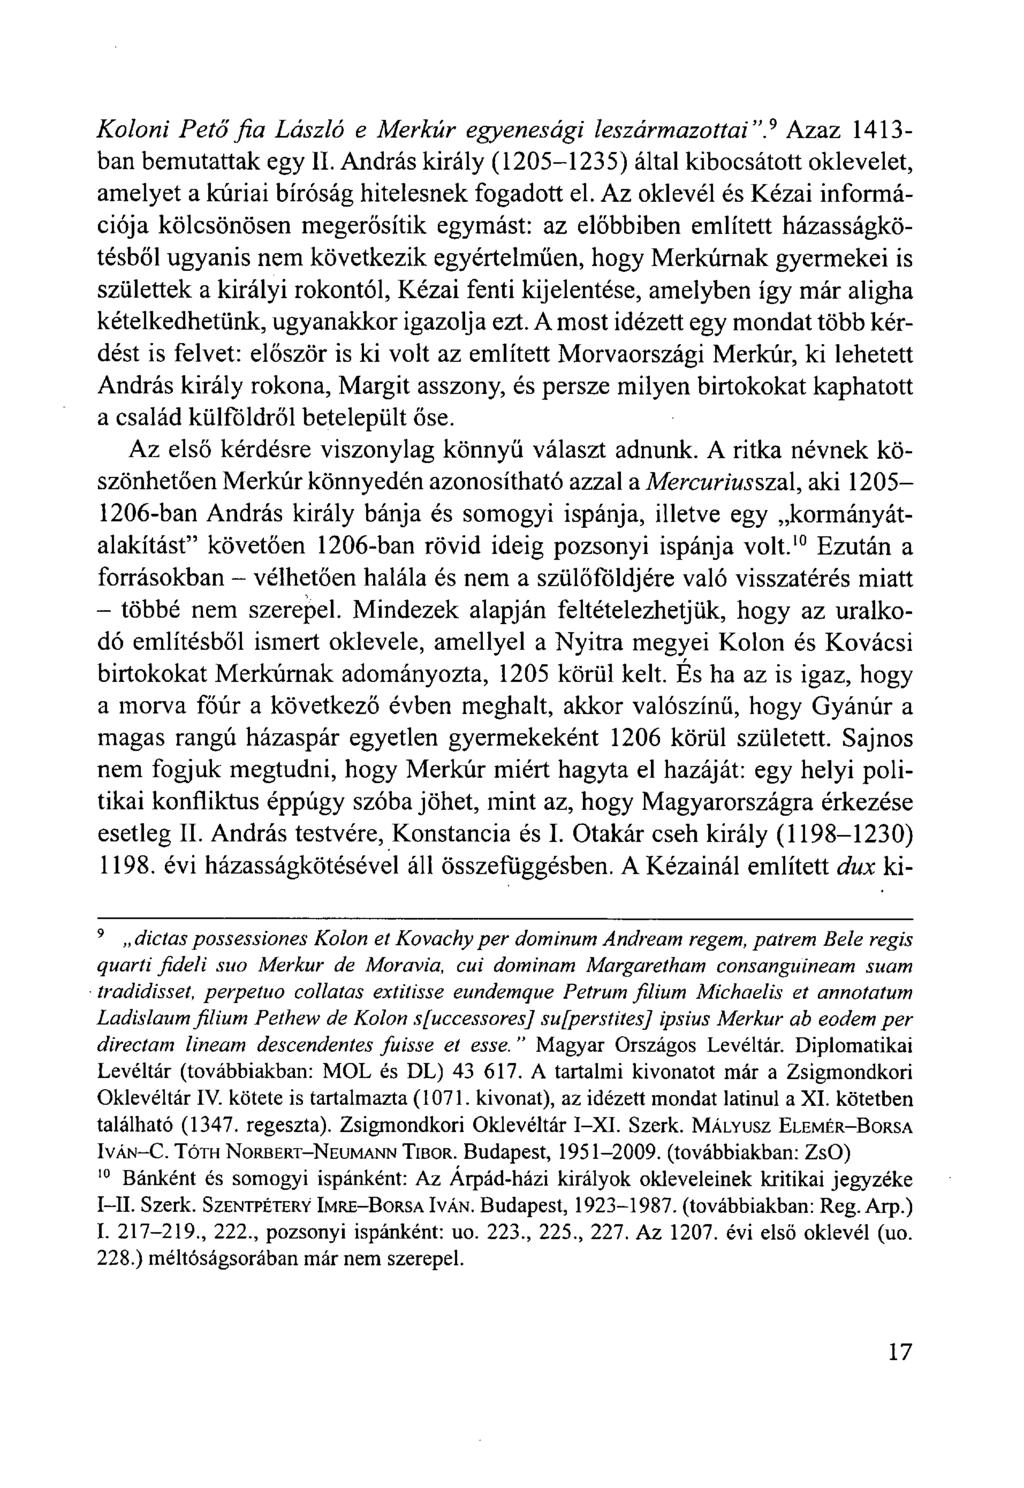 Koloni Pető fia László e Merkúr egyenesági leszármazottai". 9 Azaz 1413- ban bemutattak egy II. András király (1205-1235) által kibocsátott oklevelet, amelyet a kúriai bíróság hitelesnek fogadott el.